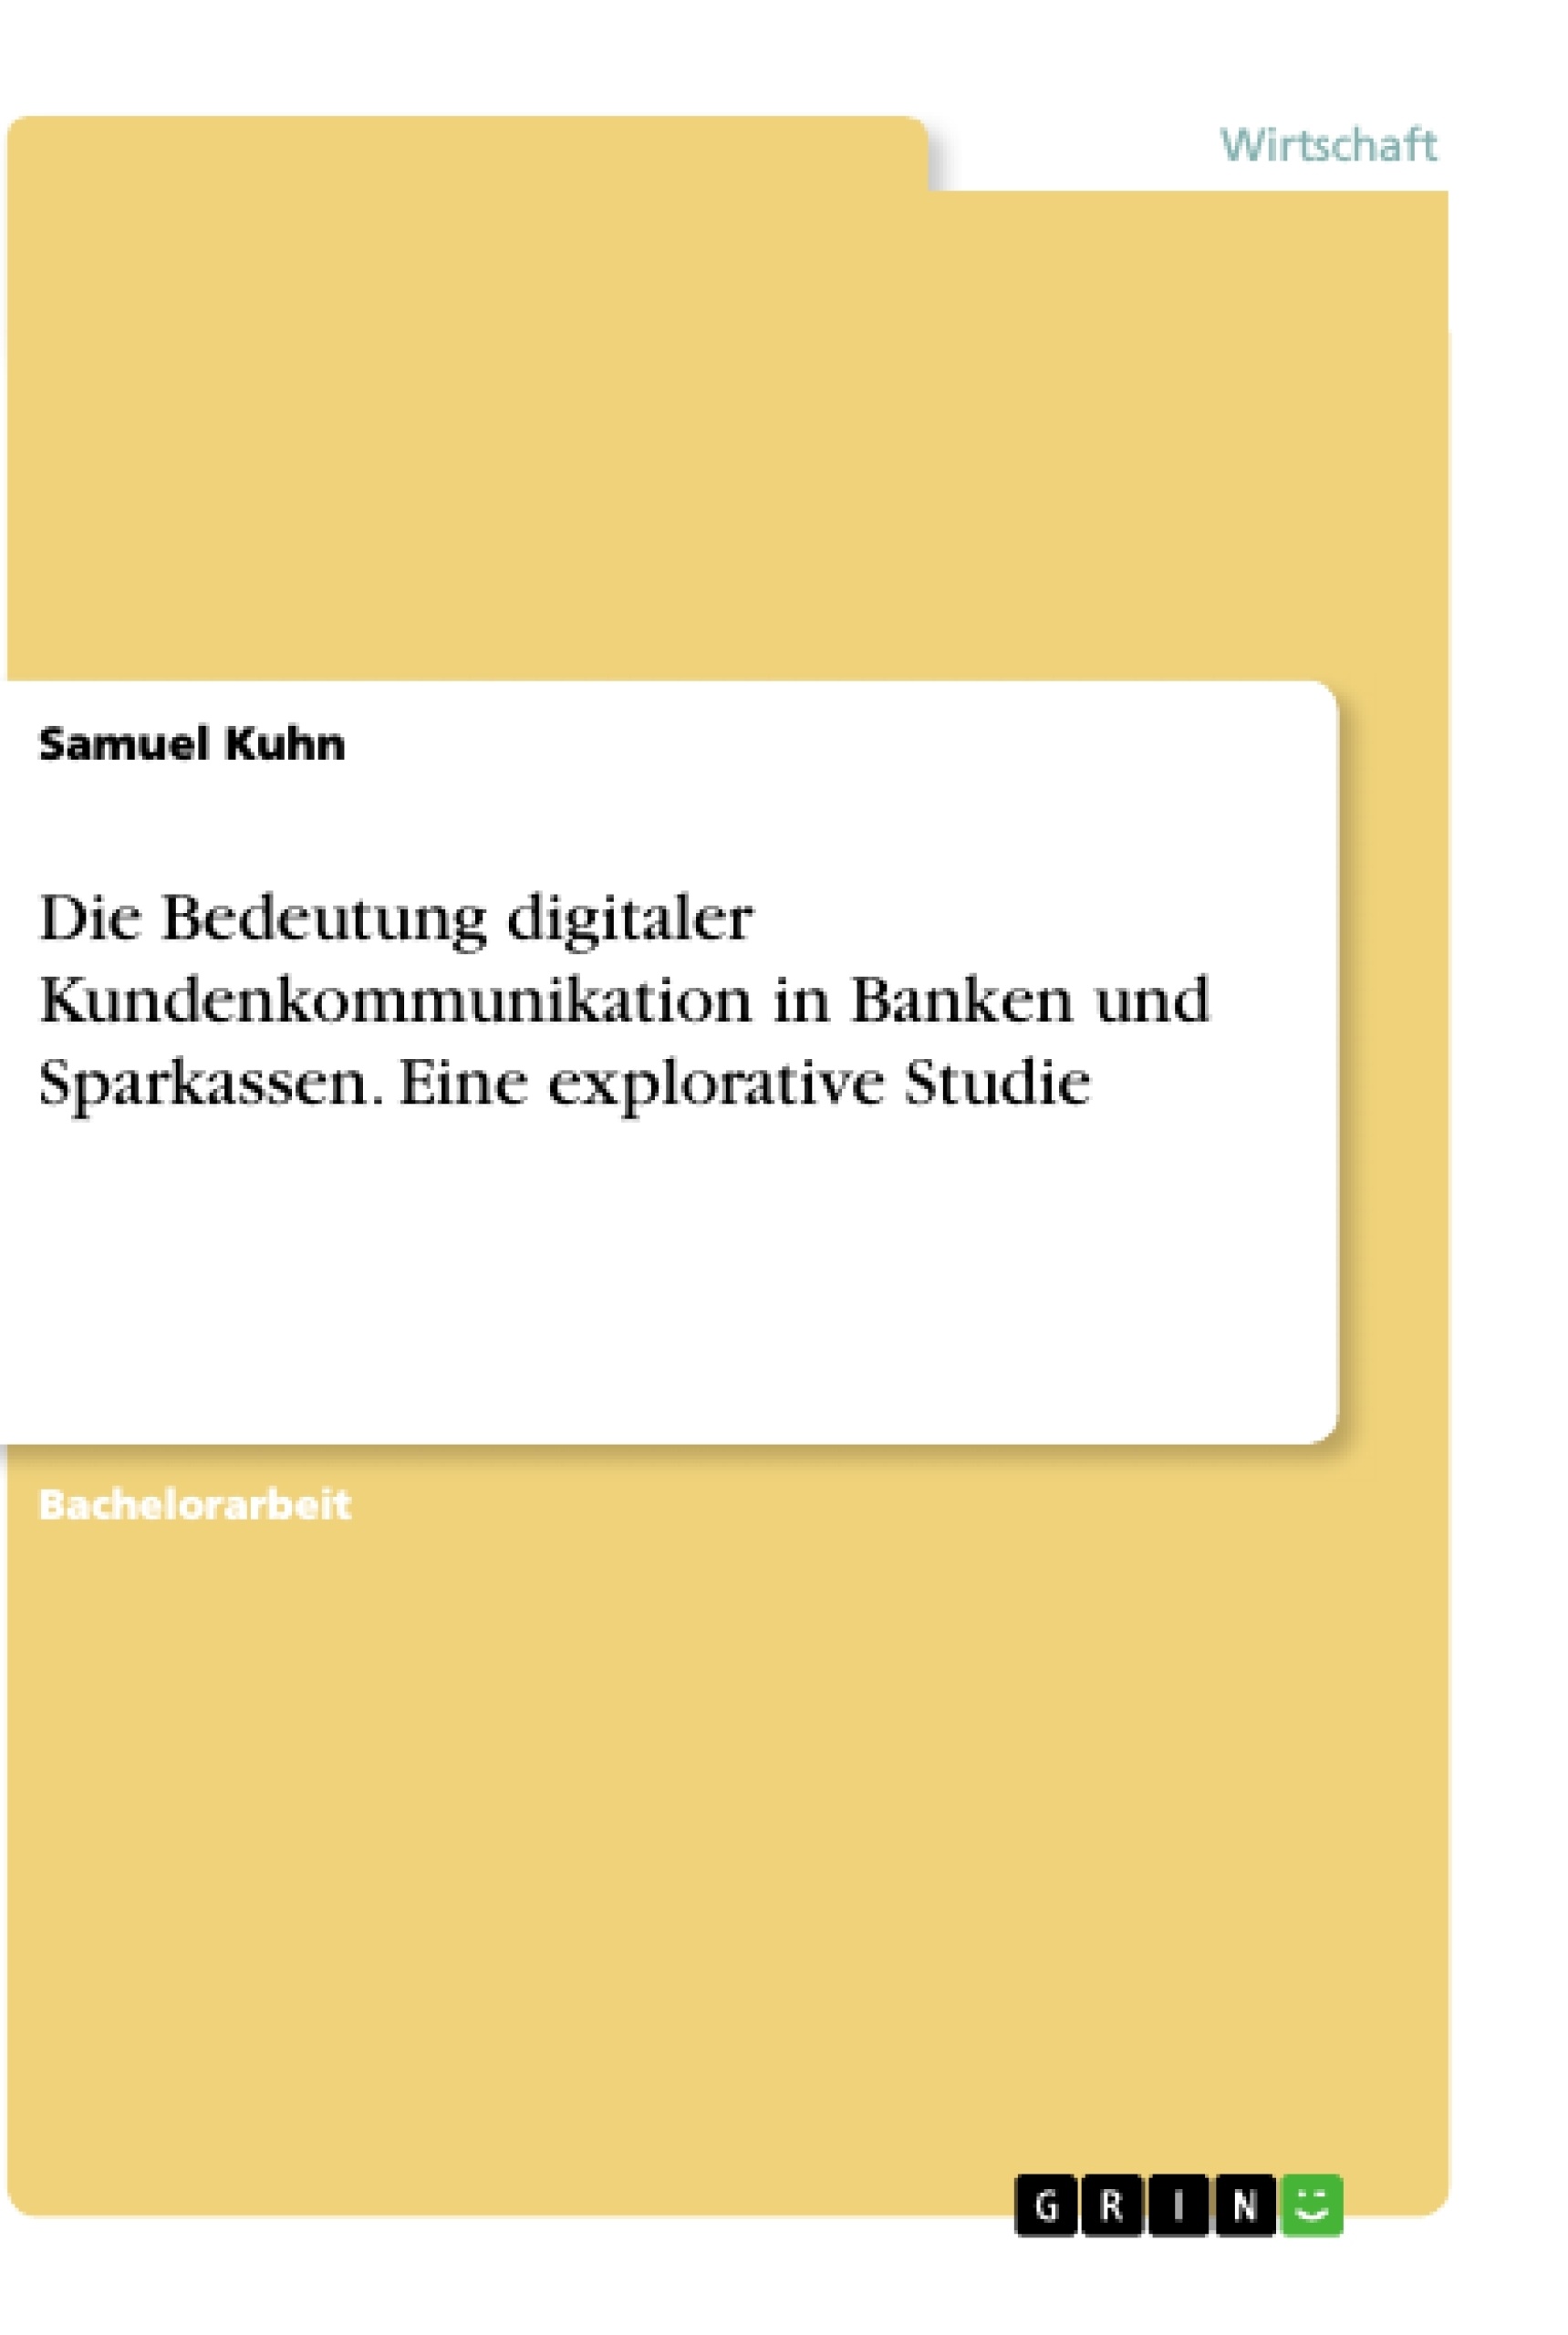 Title: Die Bedeutung digitaler Kundenkommunikation in Banken und Sparkassen. Eine explorative Studie